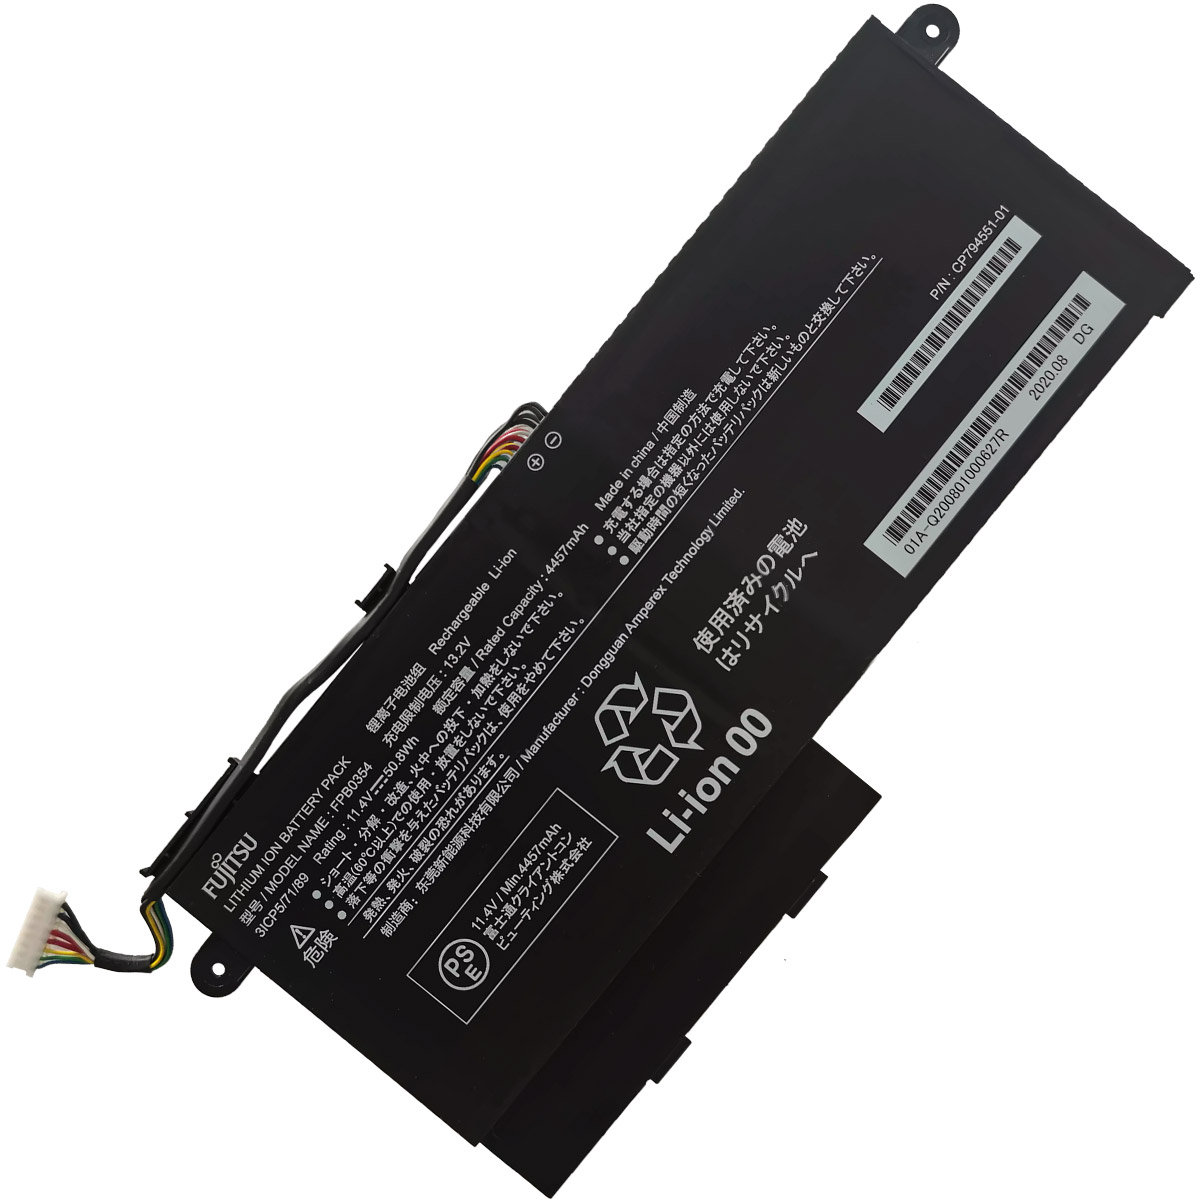 FUJITSU Uniwill-FPB0354-Laptop Replacement Battery